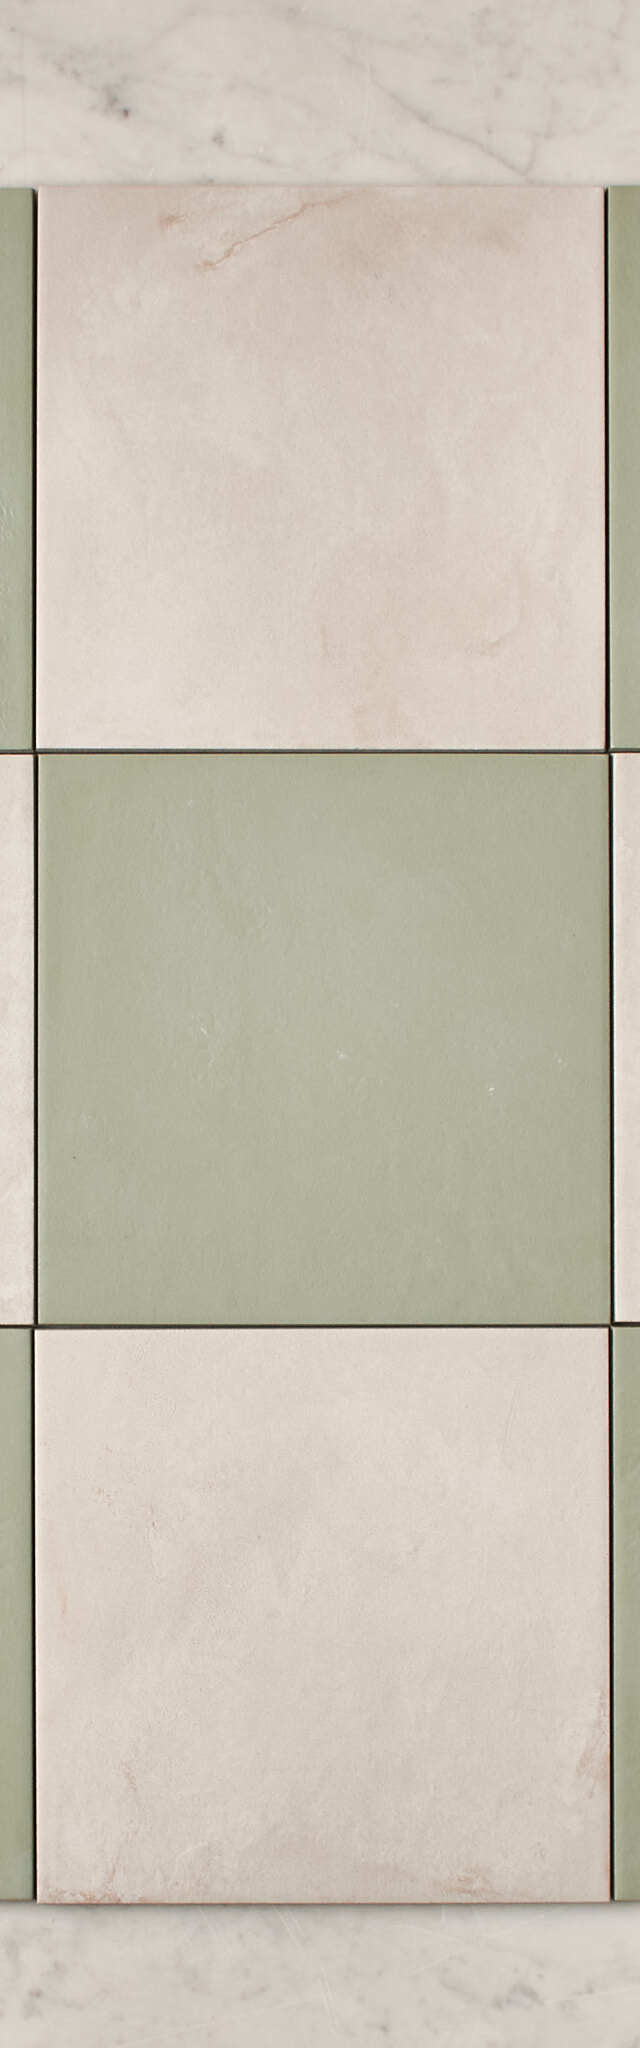 Fina Ceramics TILE Bronte Checkerboard Sage & White Tile